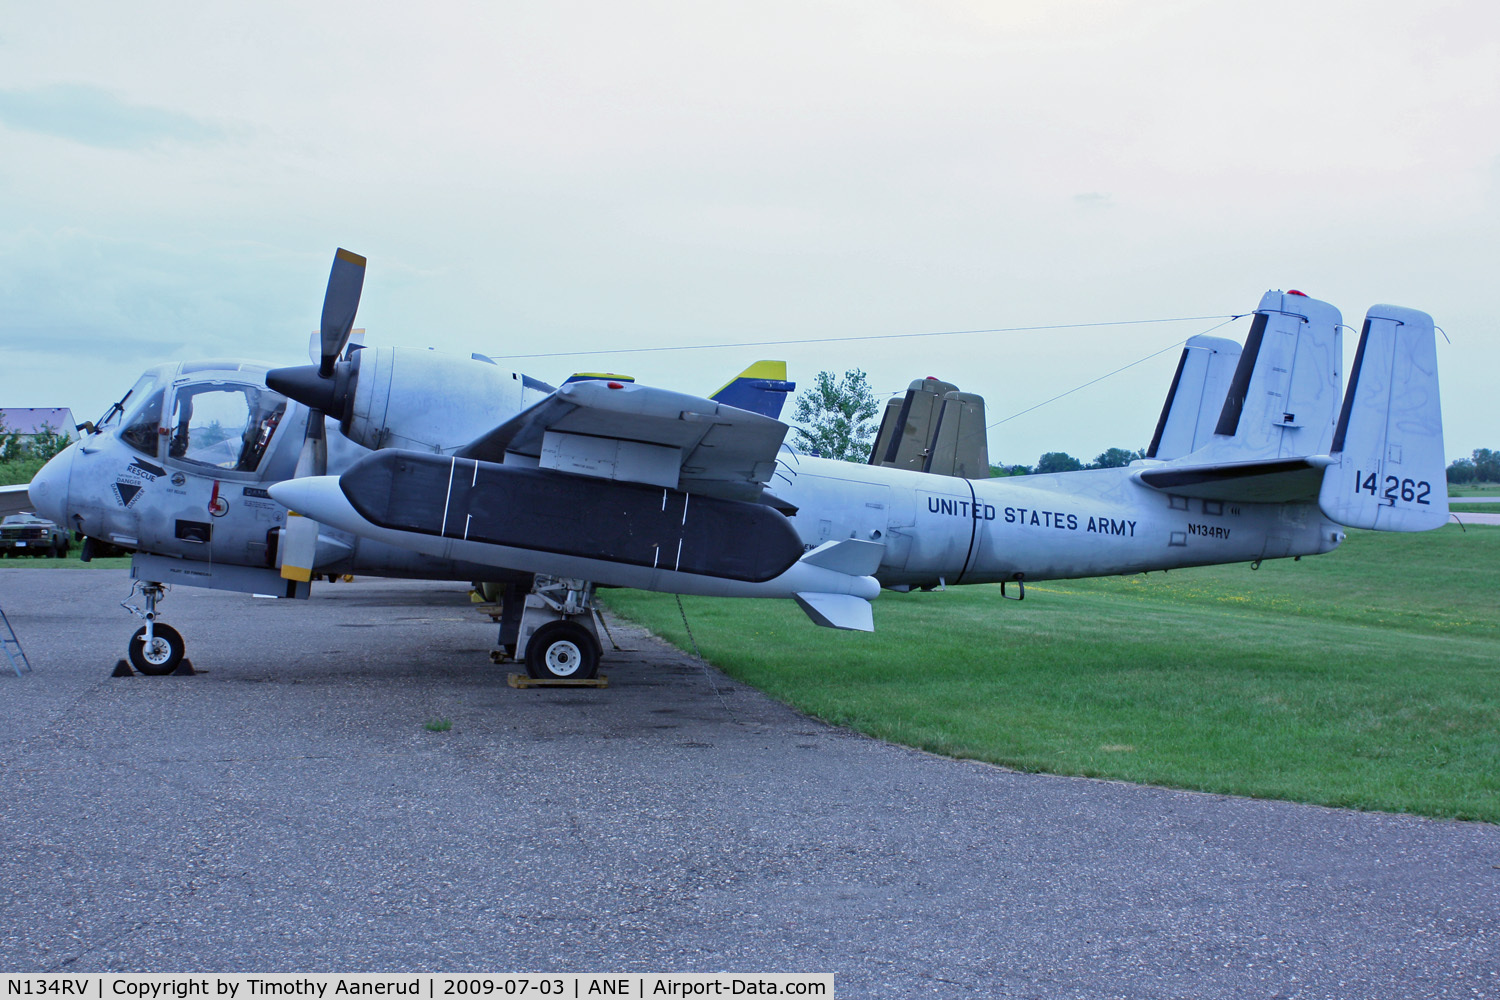 N134RV, 1964 Grumman RV-1D Mohawk C/N 77B, 1964 Grumman OV-1/RV-1, c/n: 64-14262